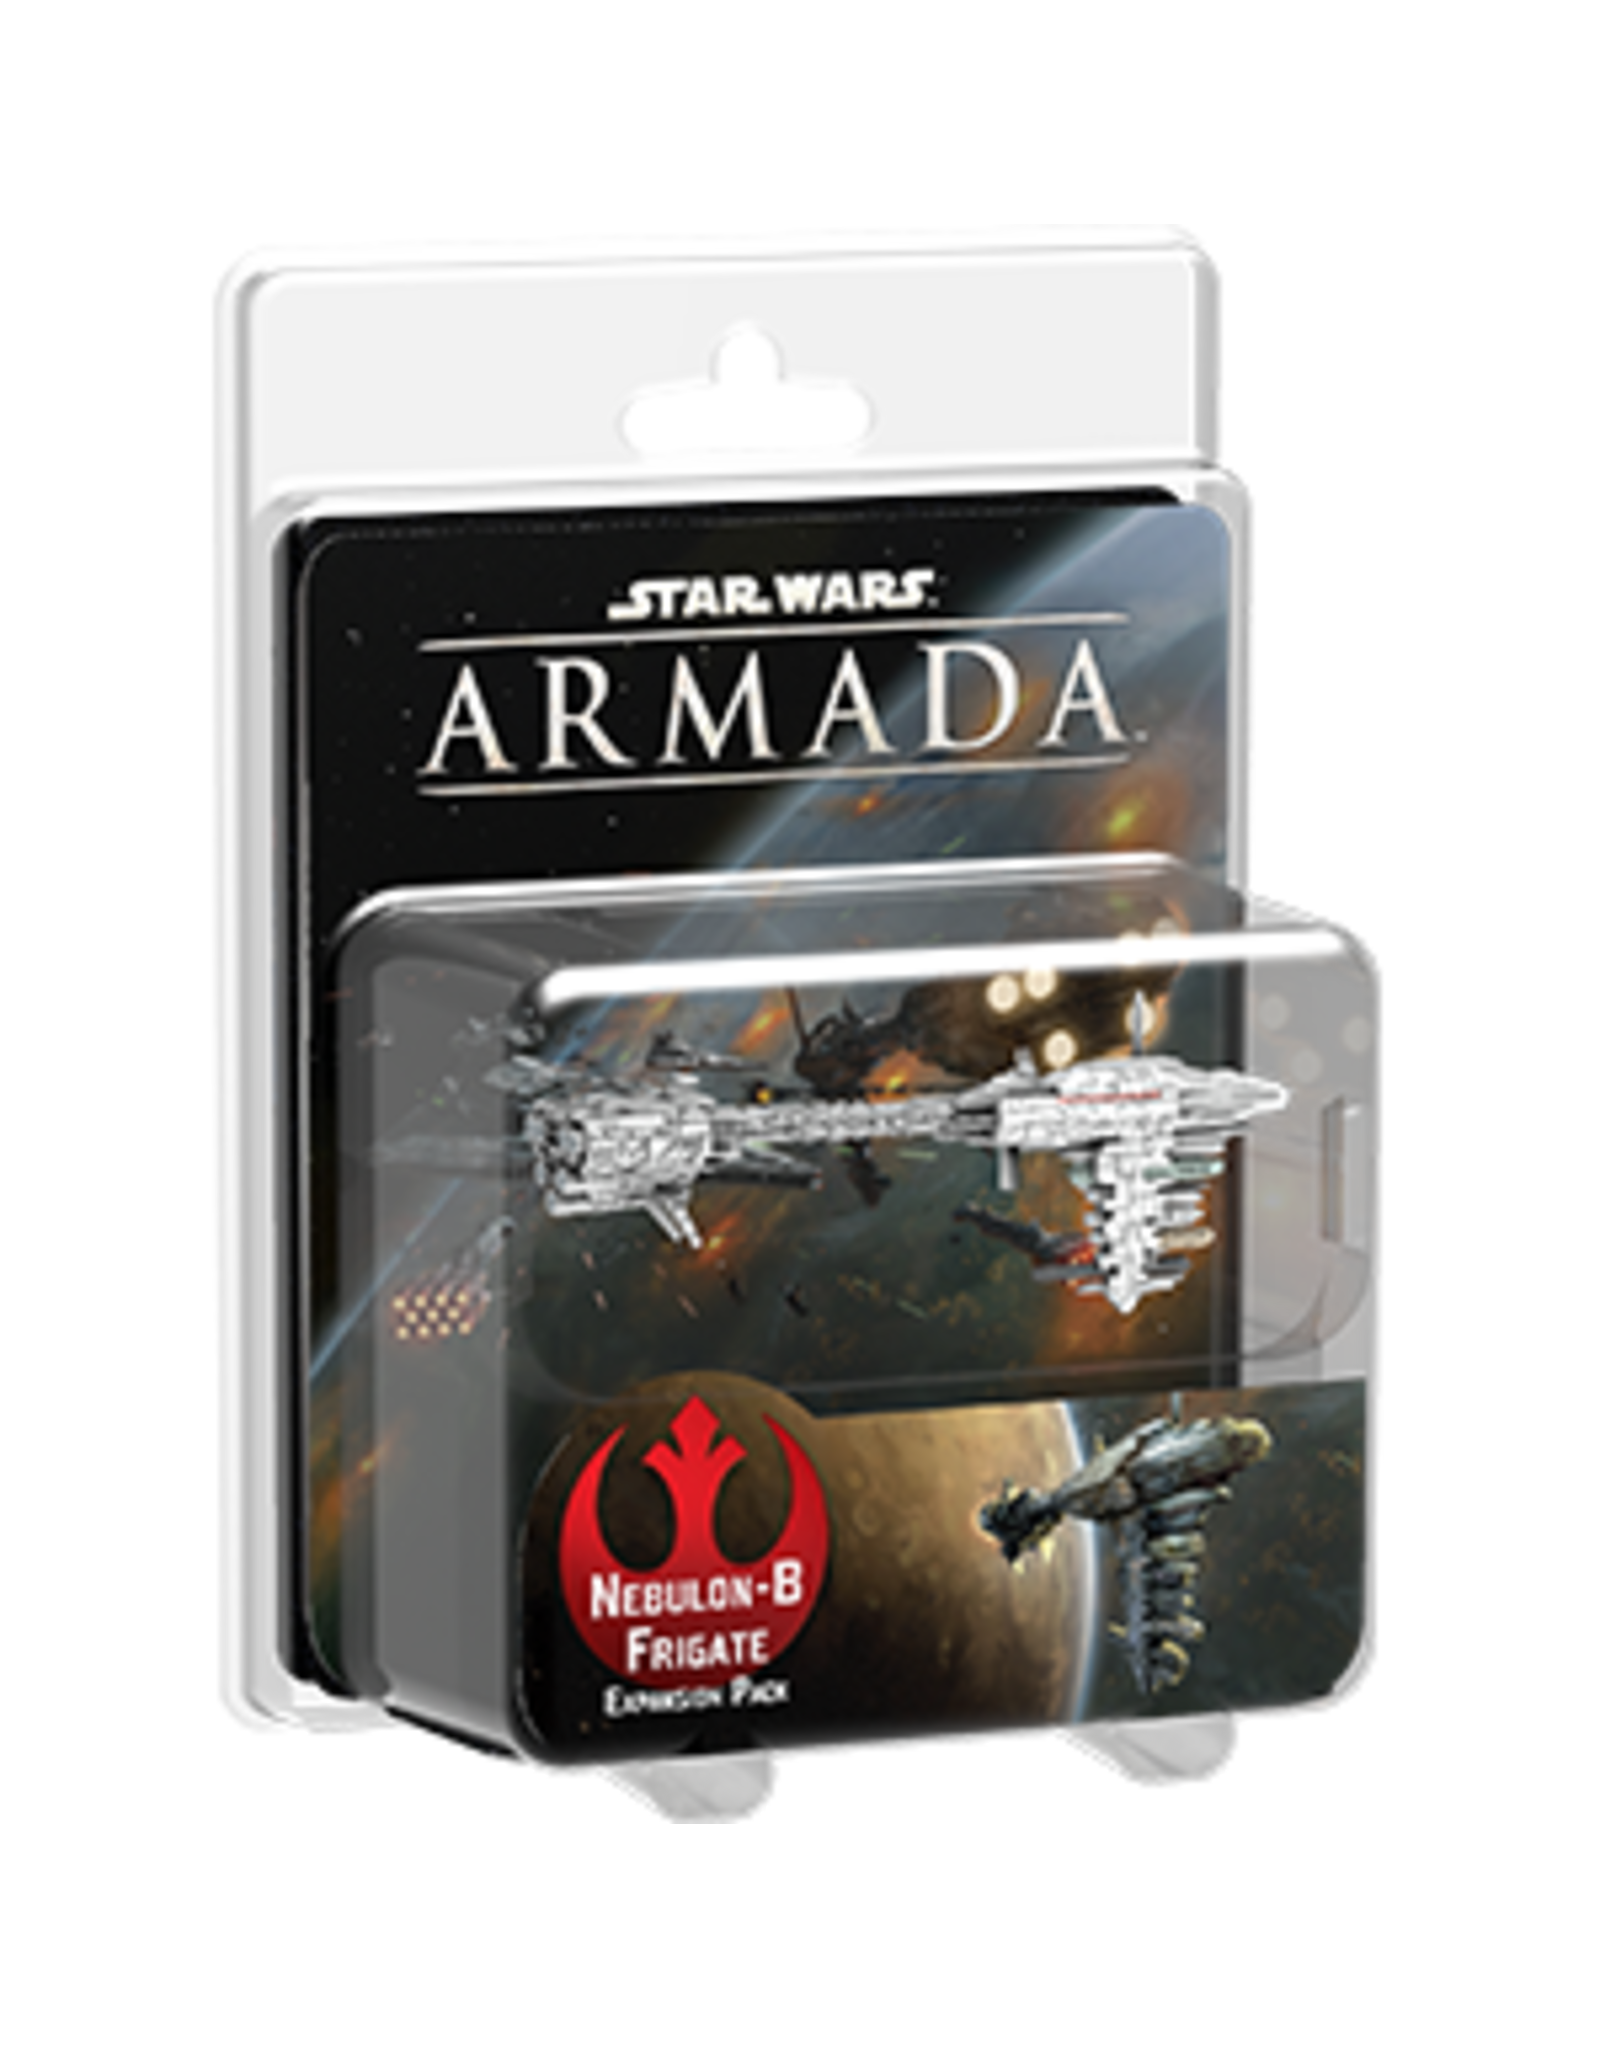 Star Wars Armada Star Wars Armada Nebulon-B Frigate